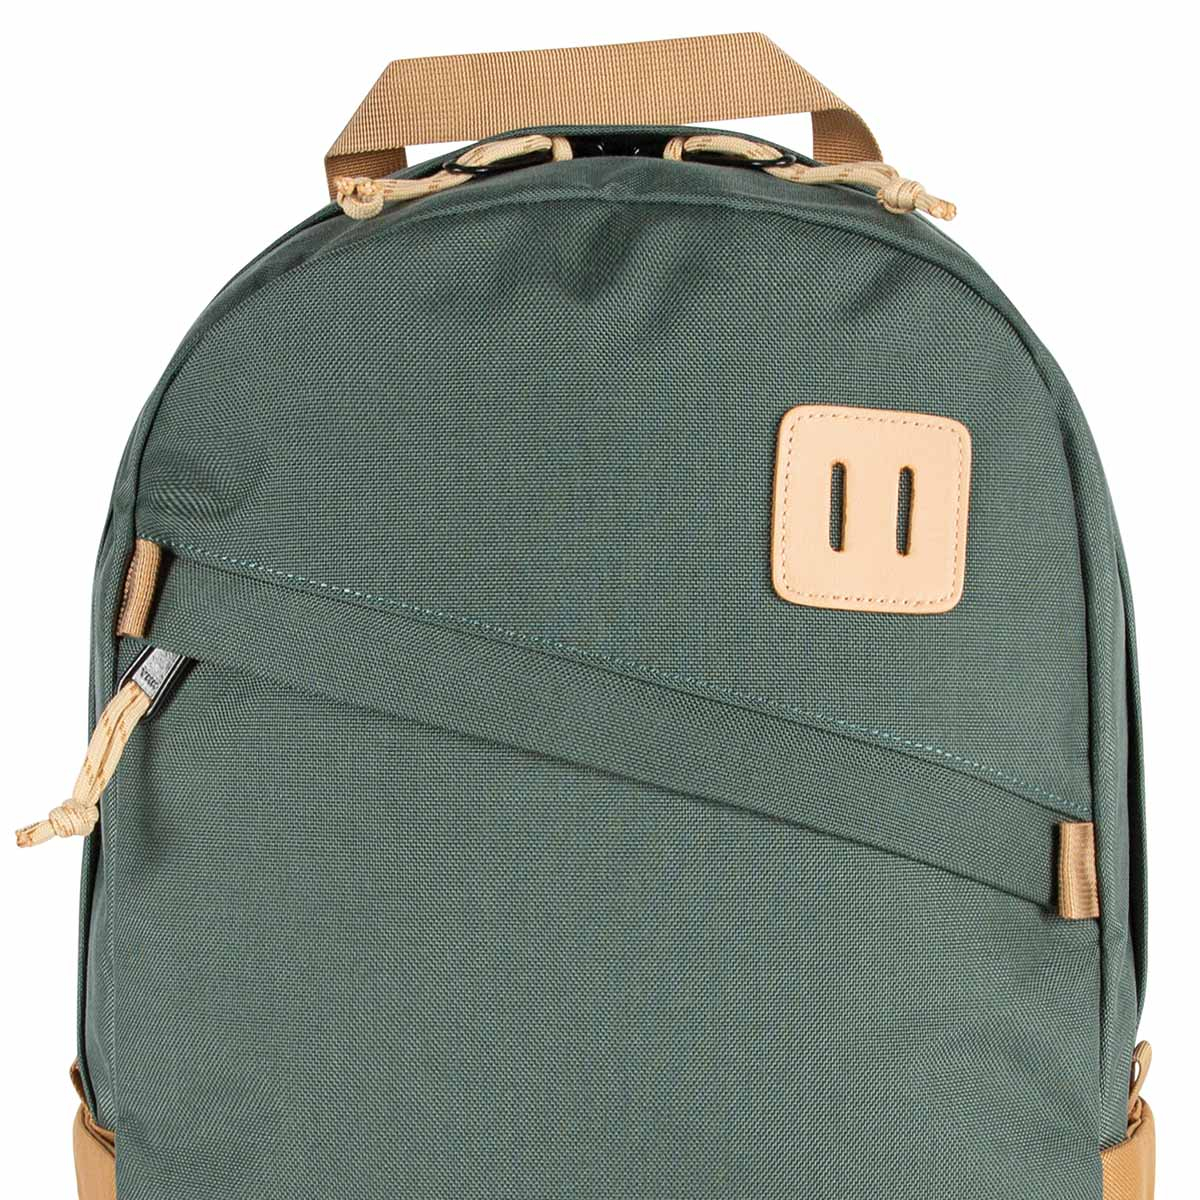 Topo Designs Daypack Classic Forest/Khaki, starker Rucksack in 1000D Nylon mit 15 Zoll Laptopfach und 21.6 Liter Stauraum